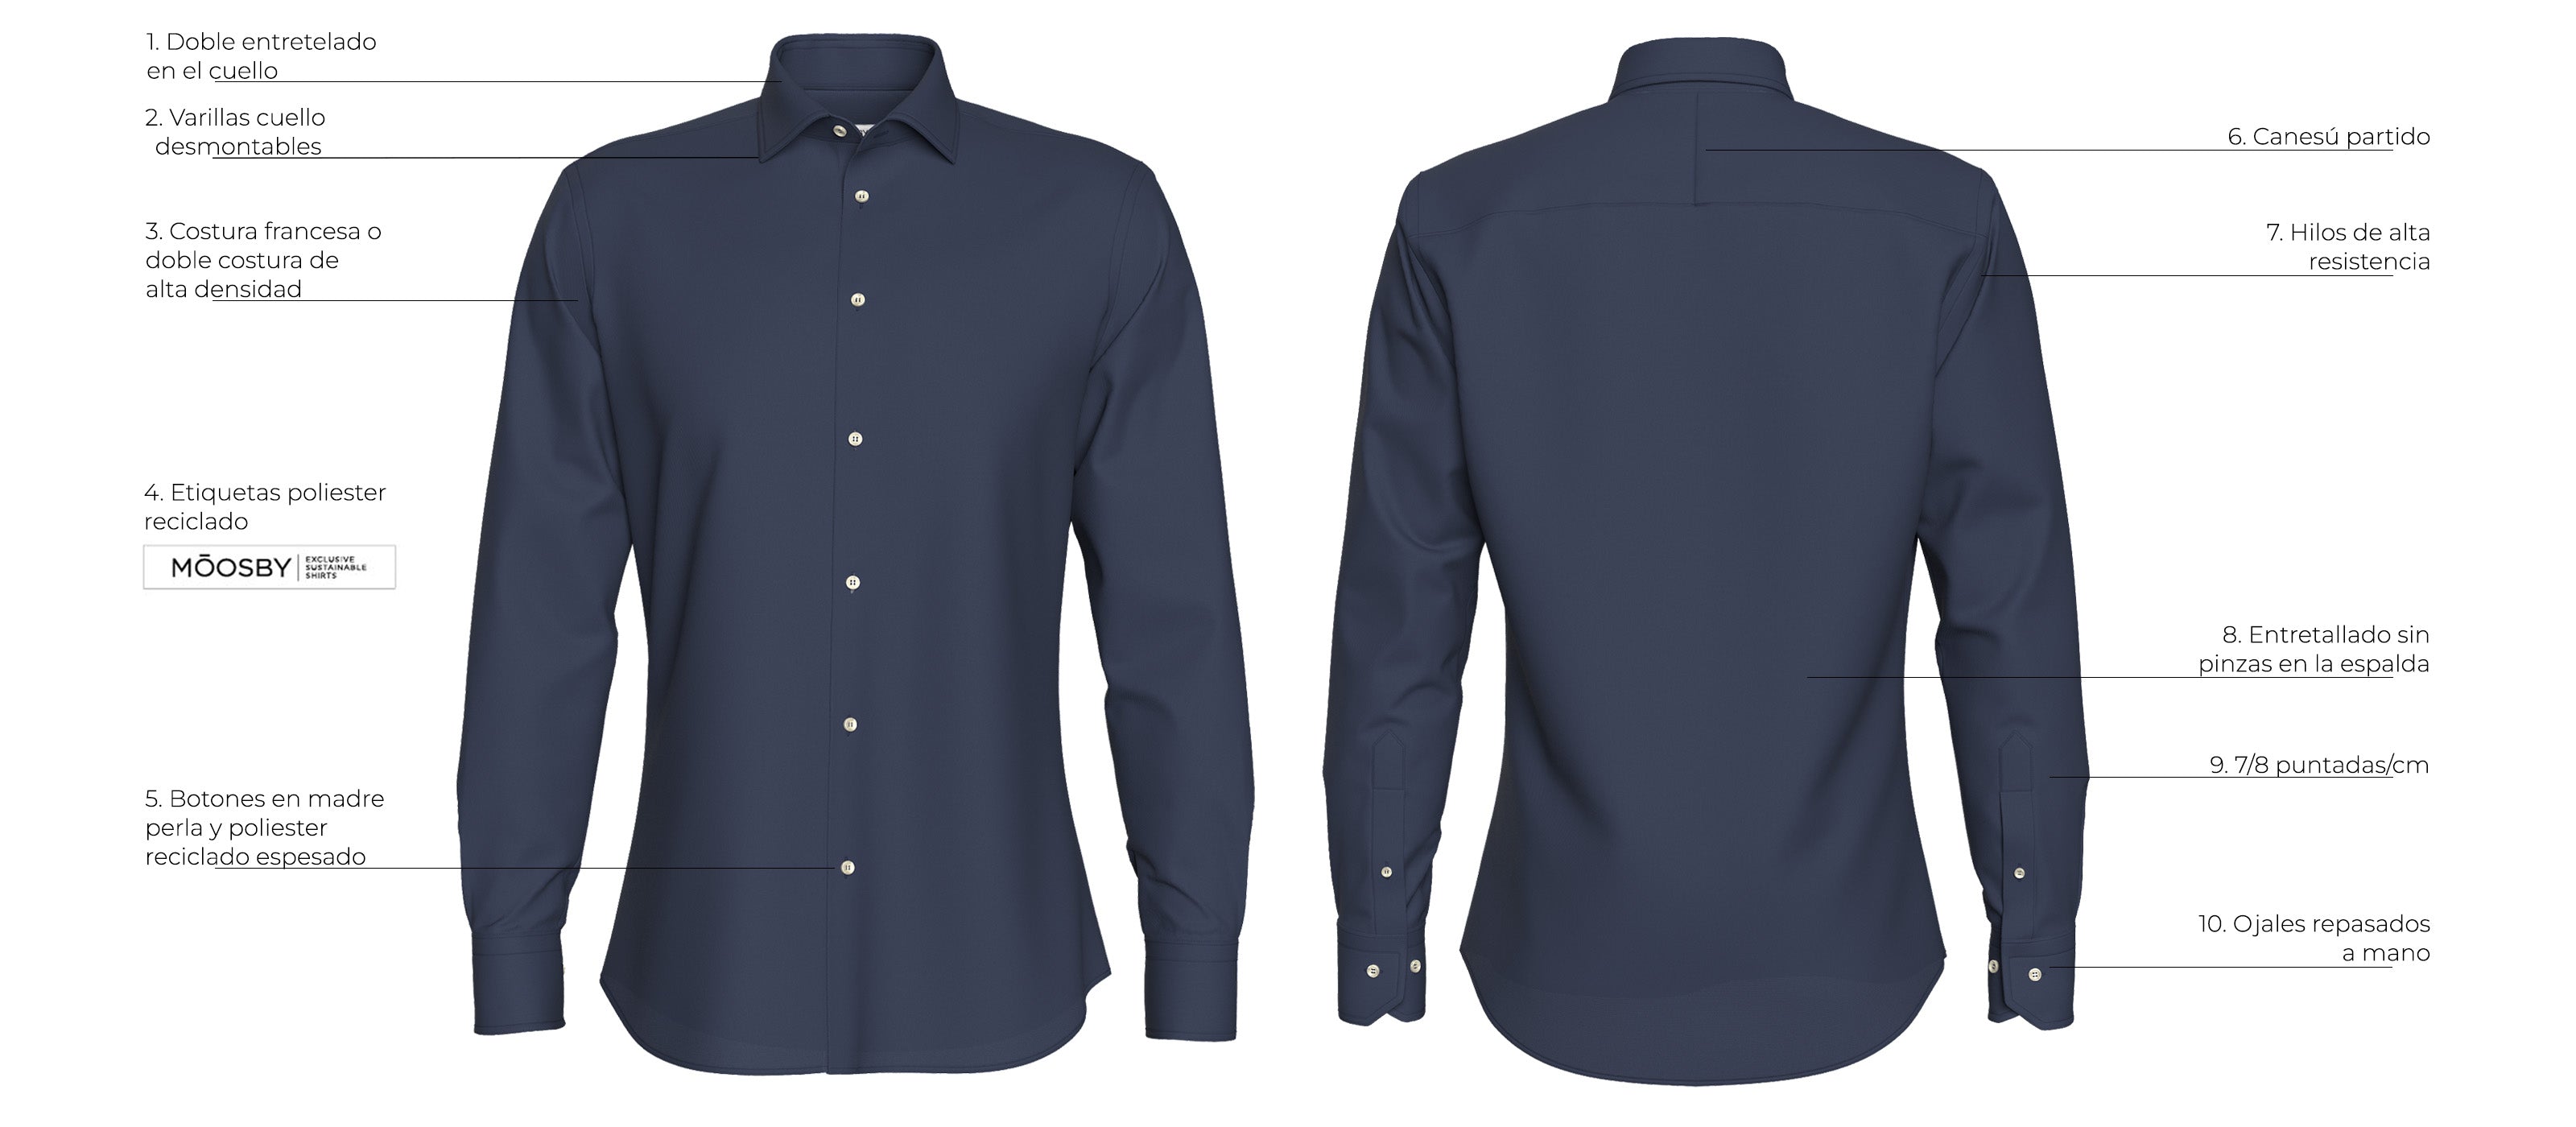 Imagen frontal y trasera de camisa azul marino con los 10 detalles que hacen de ella una prenda única